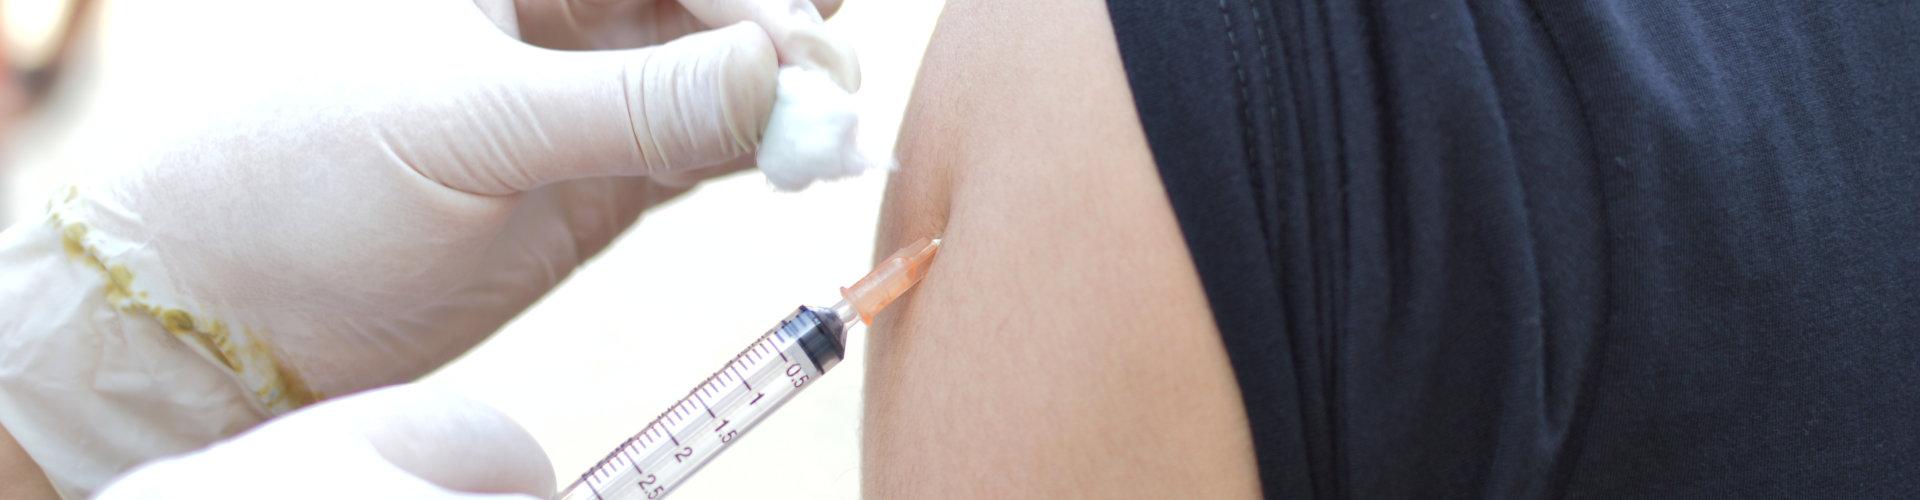 Immunization process